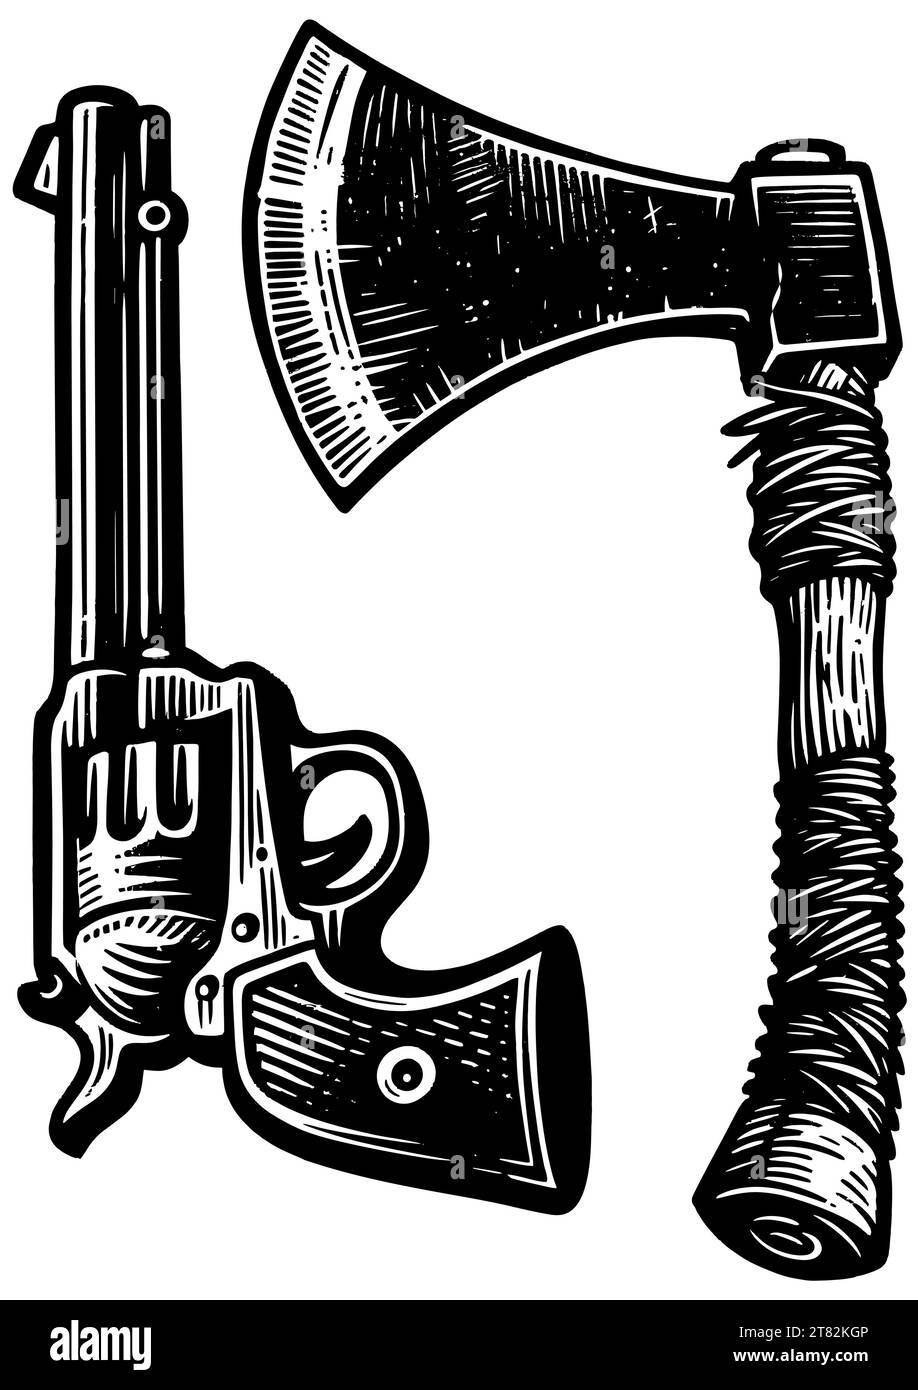 Linolschnitt-Illustration von Revolver und Tomahawk, die alte westliche Waffen symbolisiert. Stock Vektor